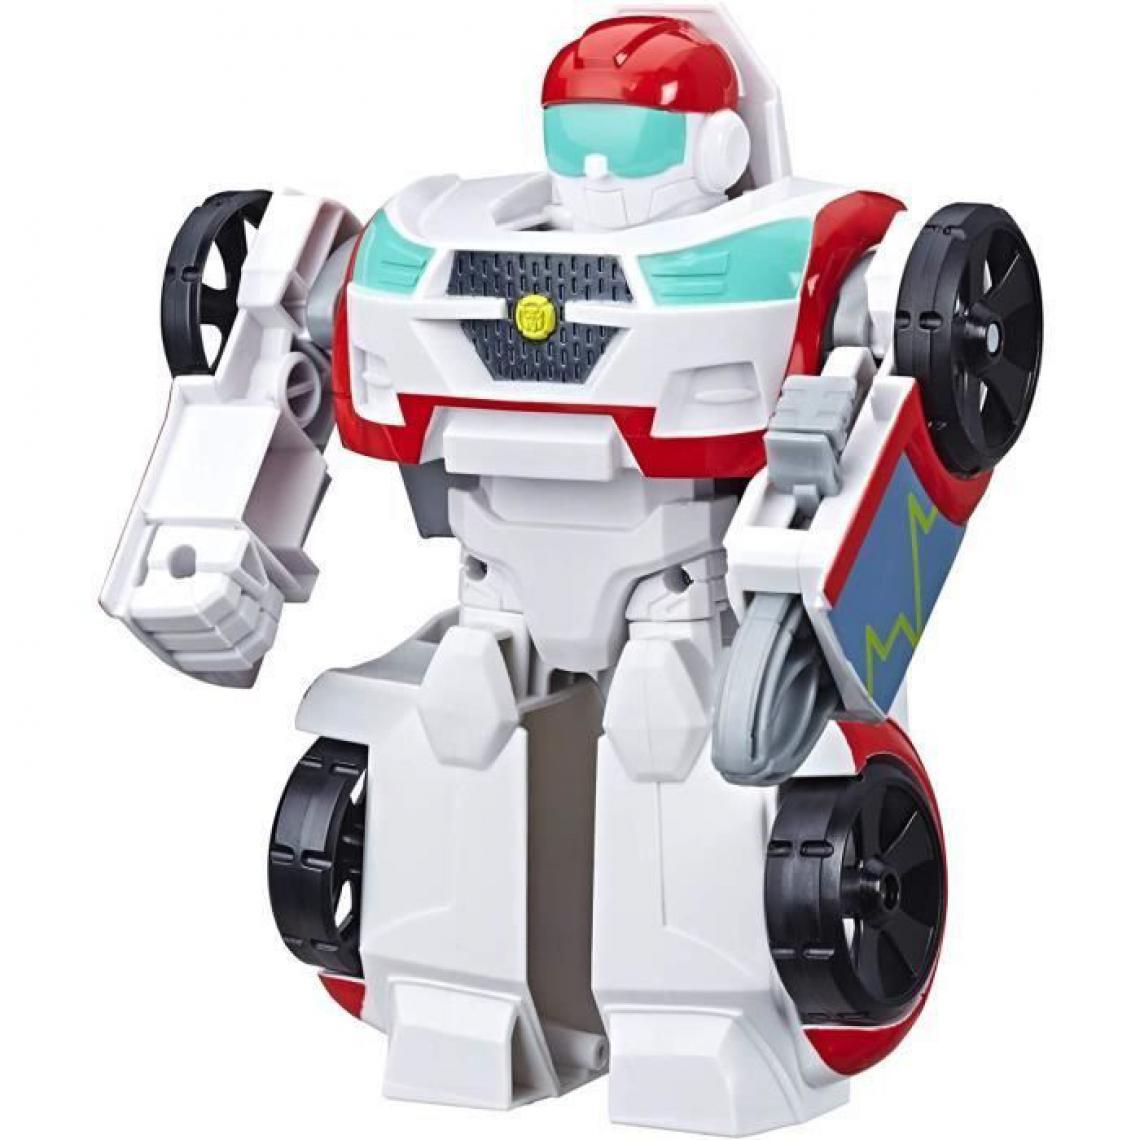 Hasbro - Transformers Playskool Rescue Bots Academy - Robot Secouriste Medix de 15cm - Jouet transformable 2 en 1 - Films et séries